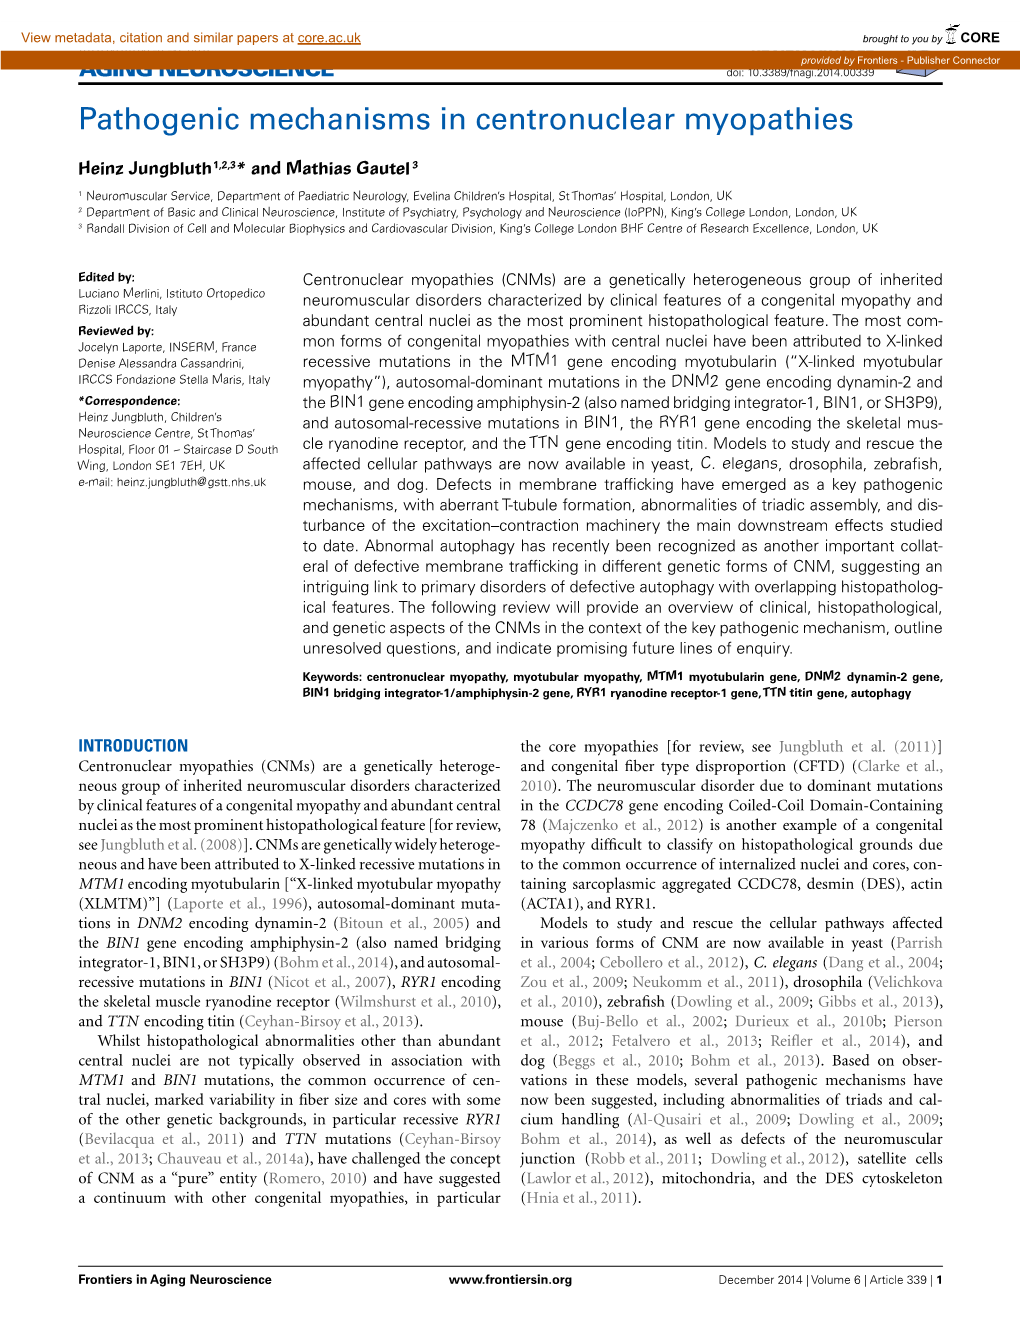 Pathogenic Mechanisms in Centronuclear Myopathies